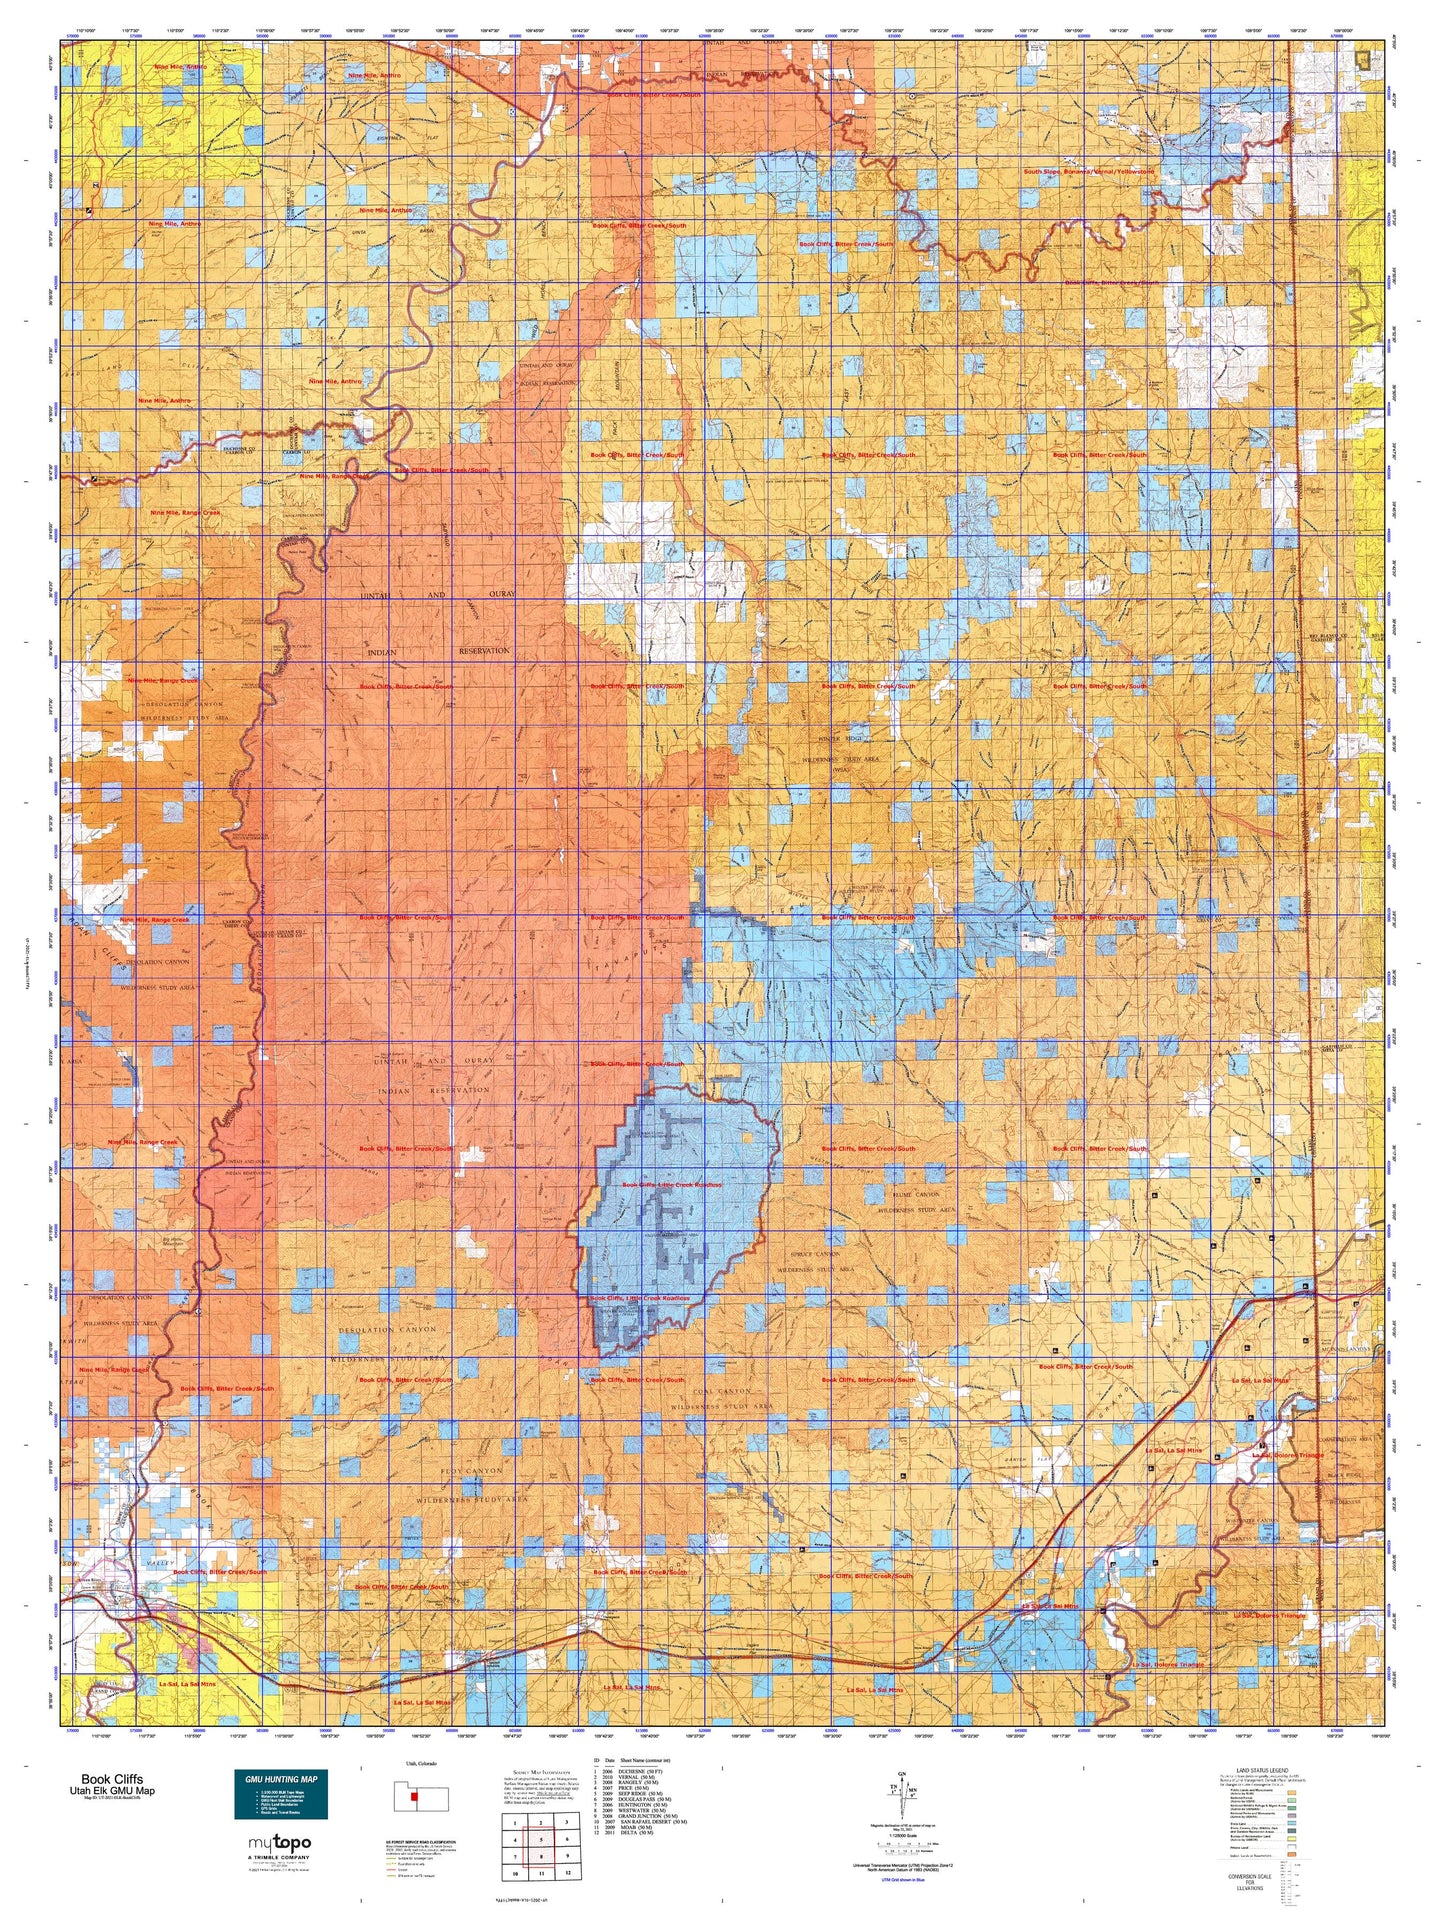 Utah Elk GMU Book Cliffs Map Image